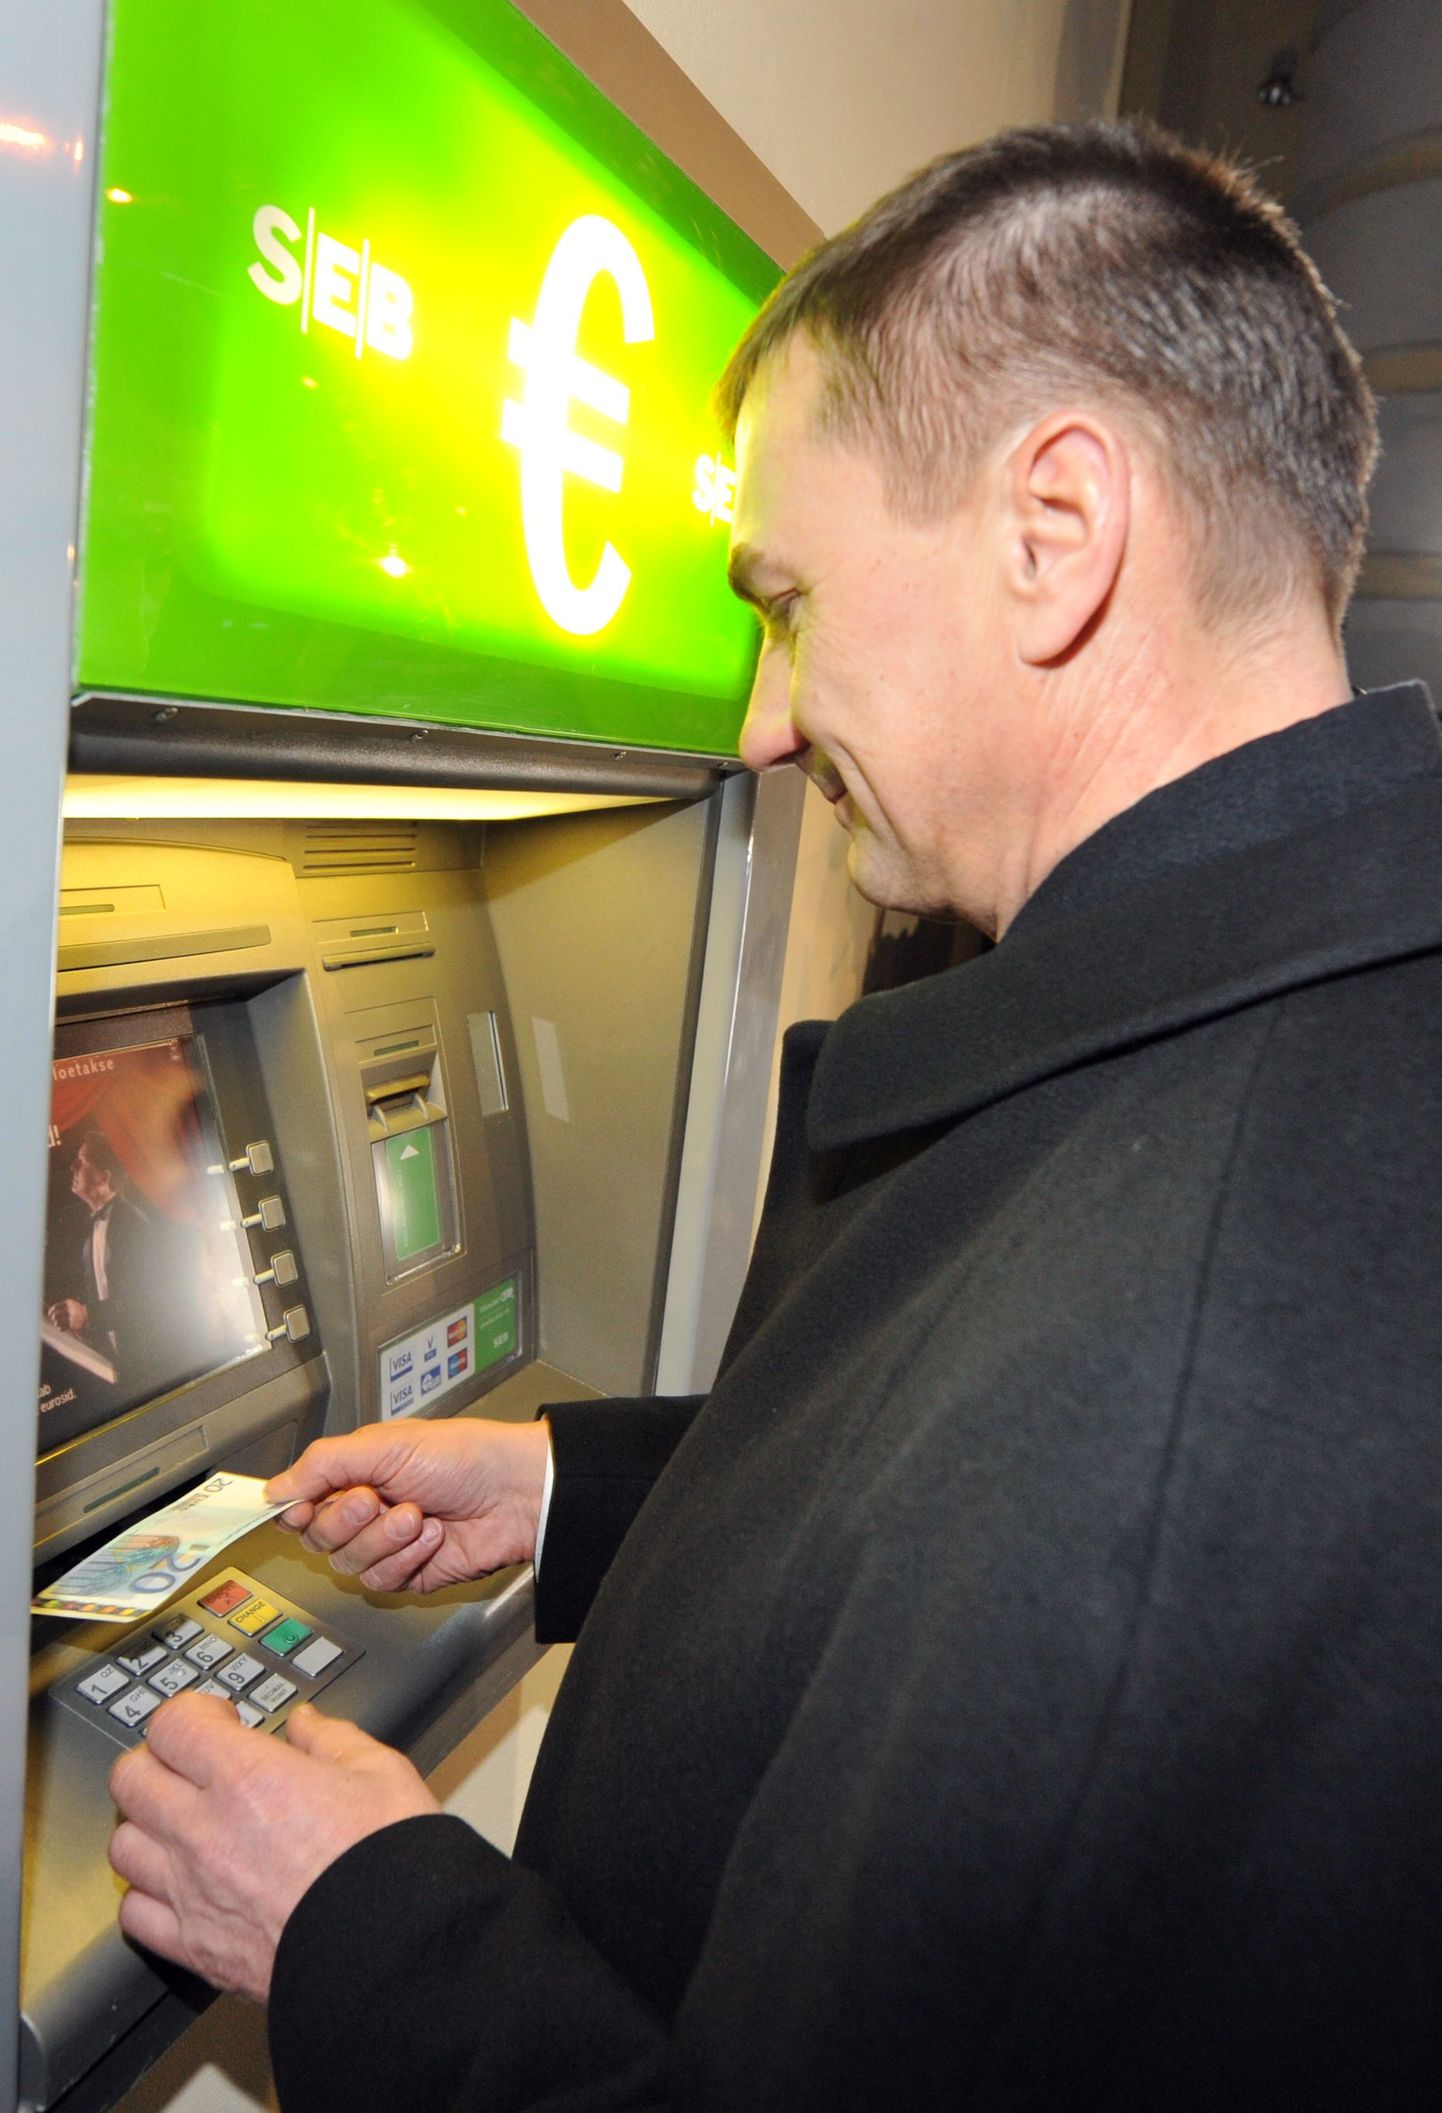 Pangaautomaat, millest peaminister Andrus Ansip esimesed eurod sai.